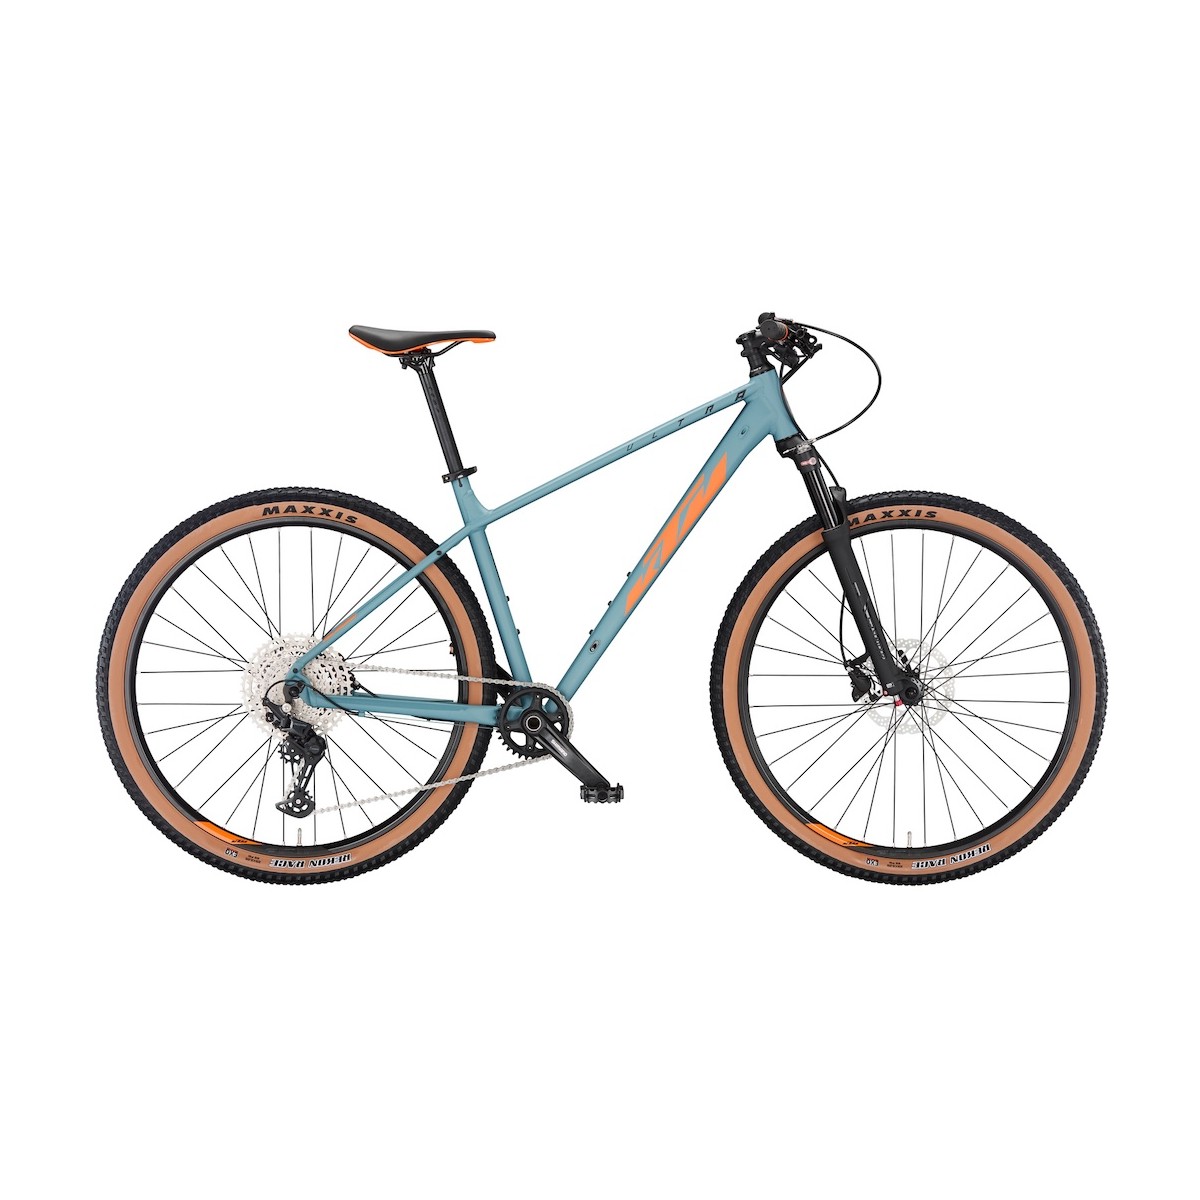 KTM ULTRA SPORT 29 mountain bike - blue/orange